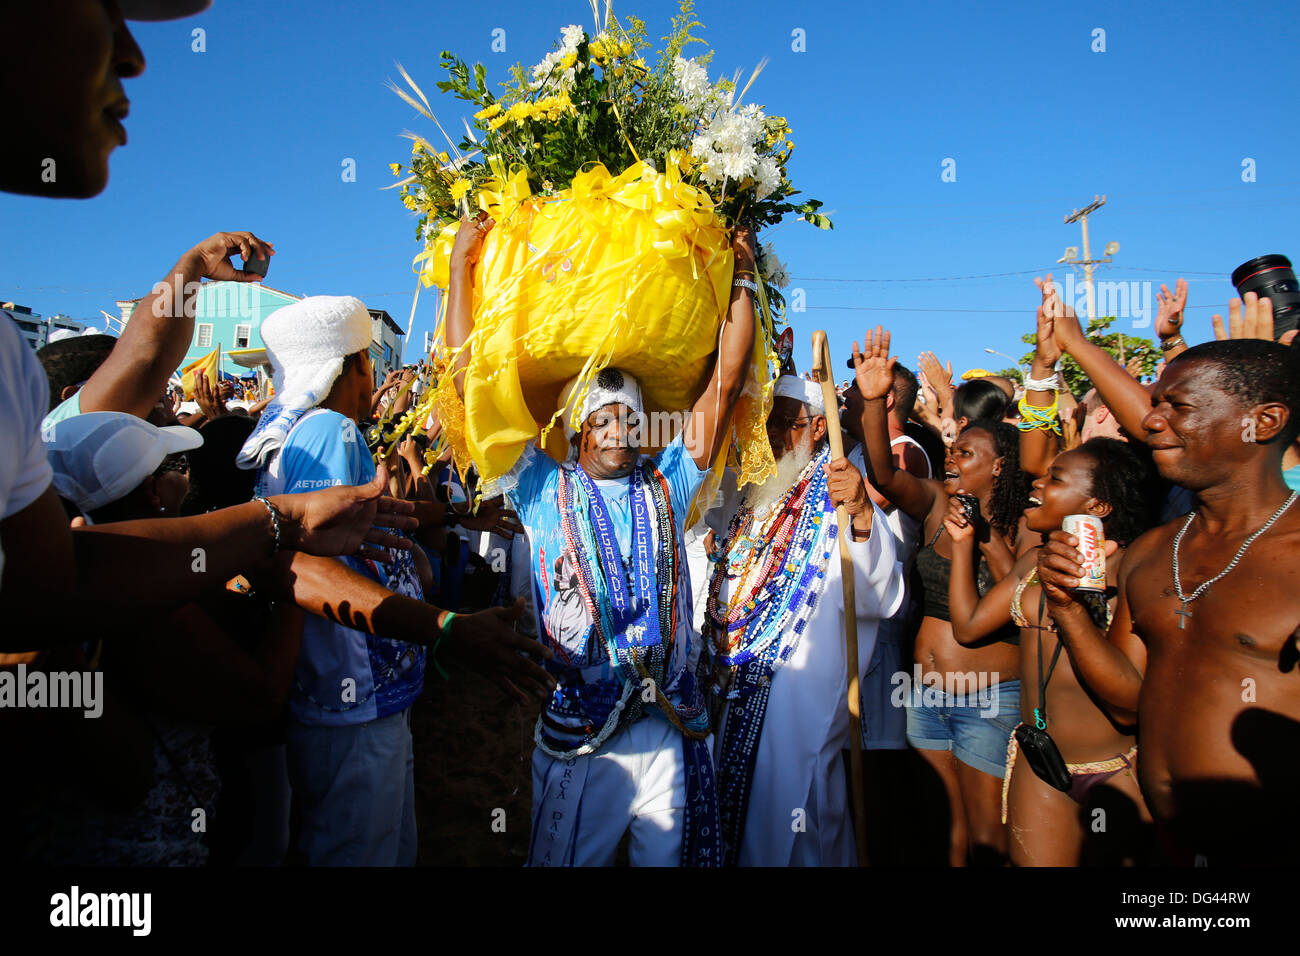 Blume-Angebote zu Lemanja durchführte, ein Sohn von Gandhi, Lemanja Festival in Rio Vermelho, Salvador, Bahia, Brasilien, Südamerika Stockfoto